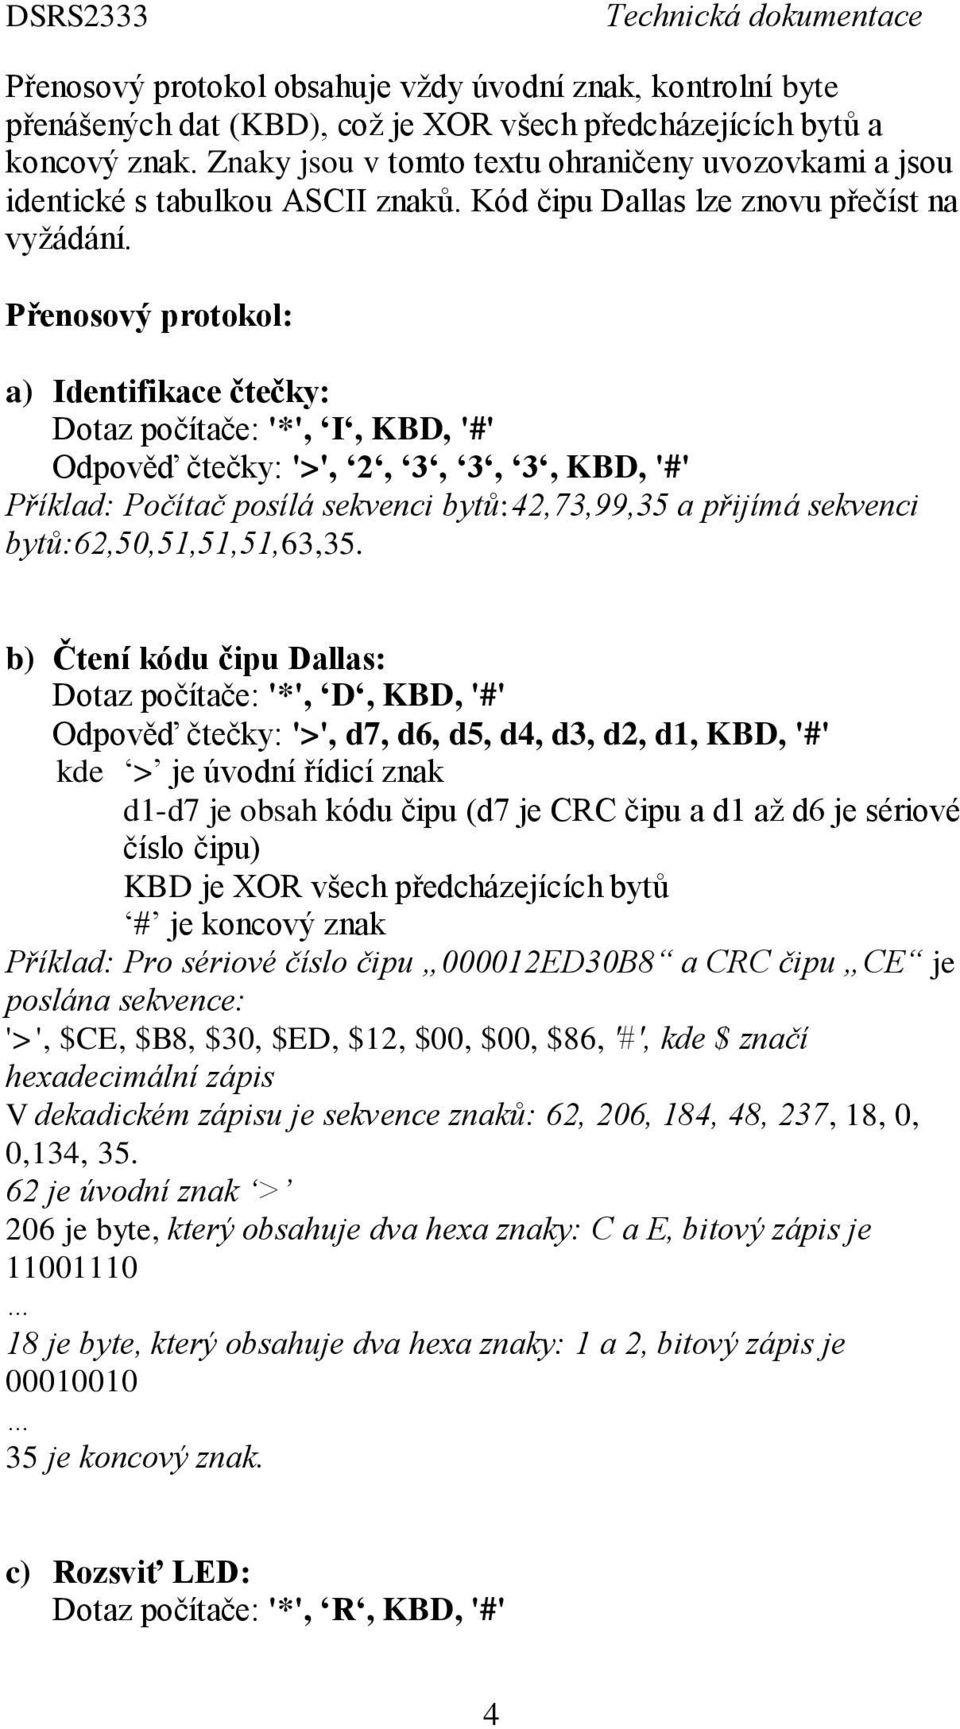 Přenosový protokol: a) Identifikace čtečky: Dotaz počítače: '*', I, KBD, '#' Odpověď čtečky: '>', 2, 3, 3, 3, KBD, '#' Příklad: Počítač posílá sekvenci bytů:42,73,99,35 a přijímá sekvenci